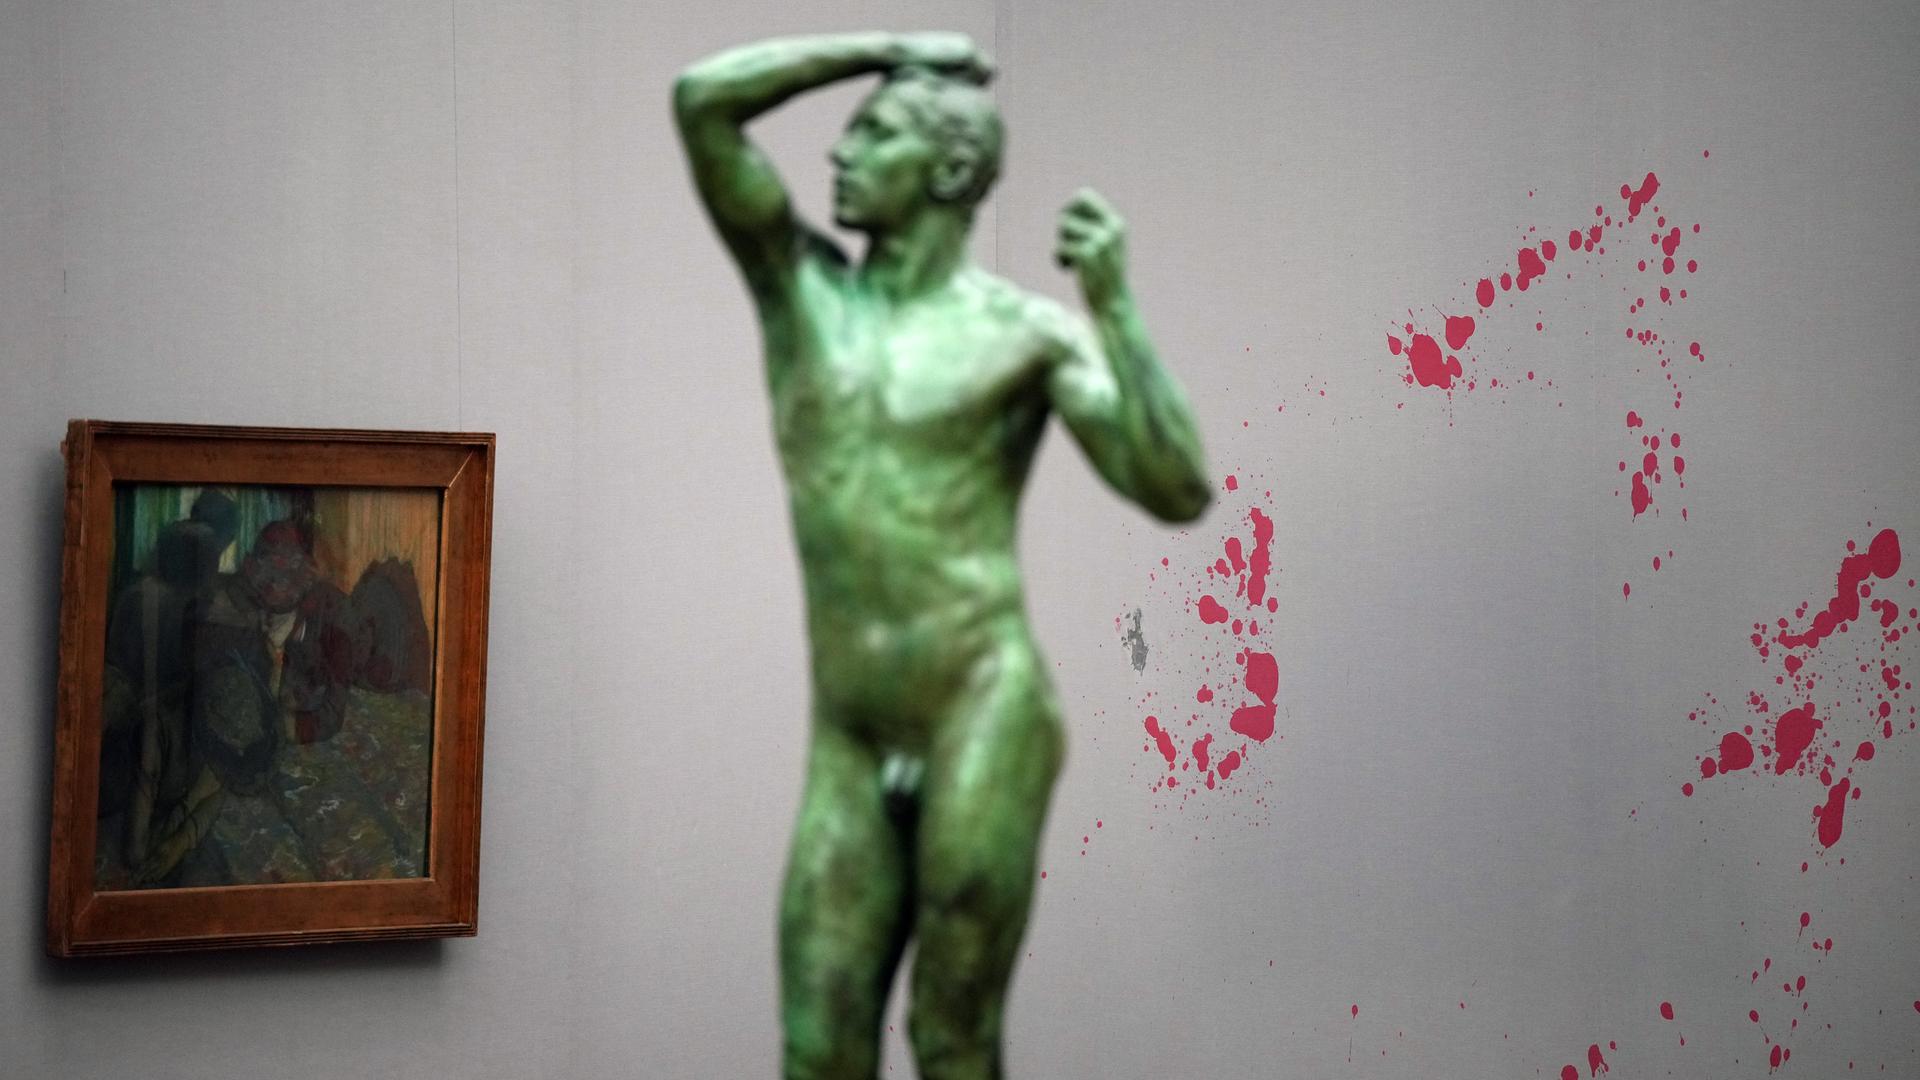 Rote Flecken sind im Impressionistensaal der Alten Nationalgalerie an einer Wand zu sehen. Im Vordergrund steht die Statue "The Bronze Age" von Auguste Rodin, links hängt das Gemälde "Unterhaltung" von Edgar Degas. 